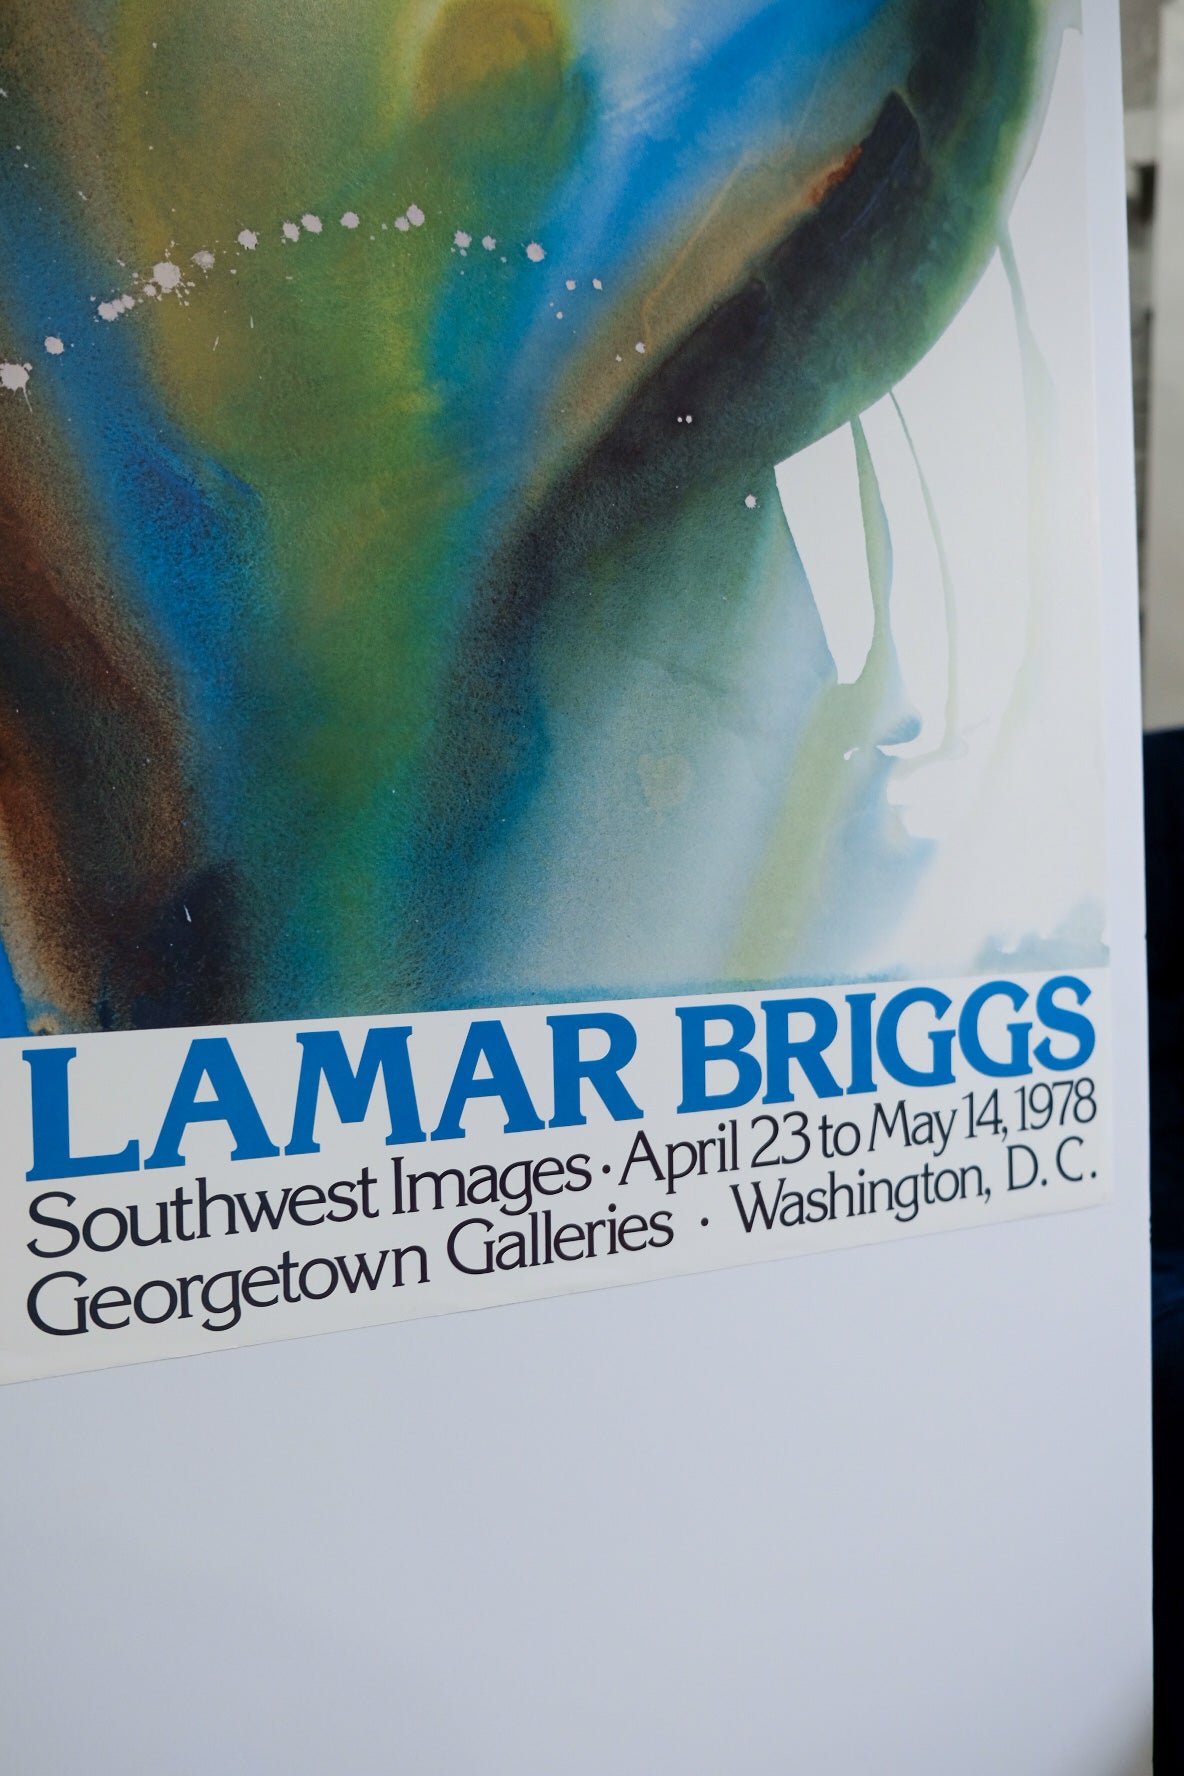 Lamar Briggs Water Hoop Georgetown Galleries Exhibition Print